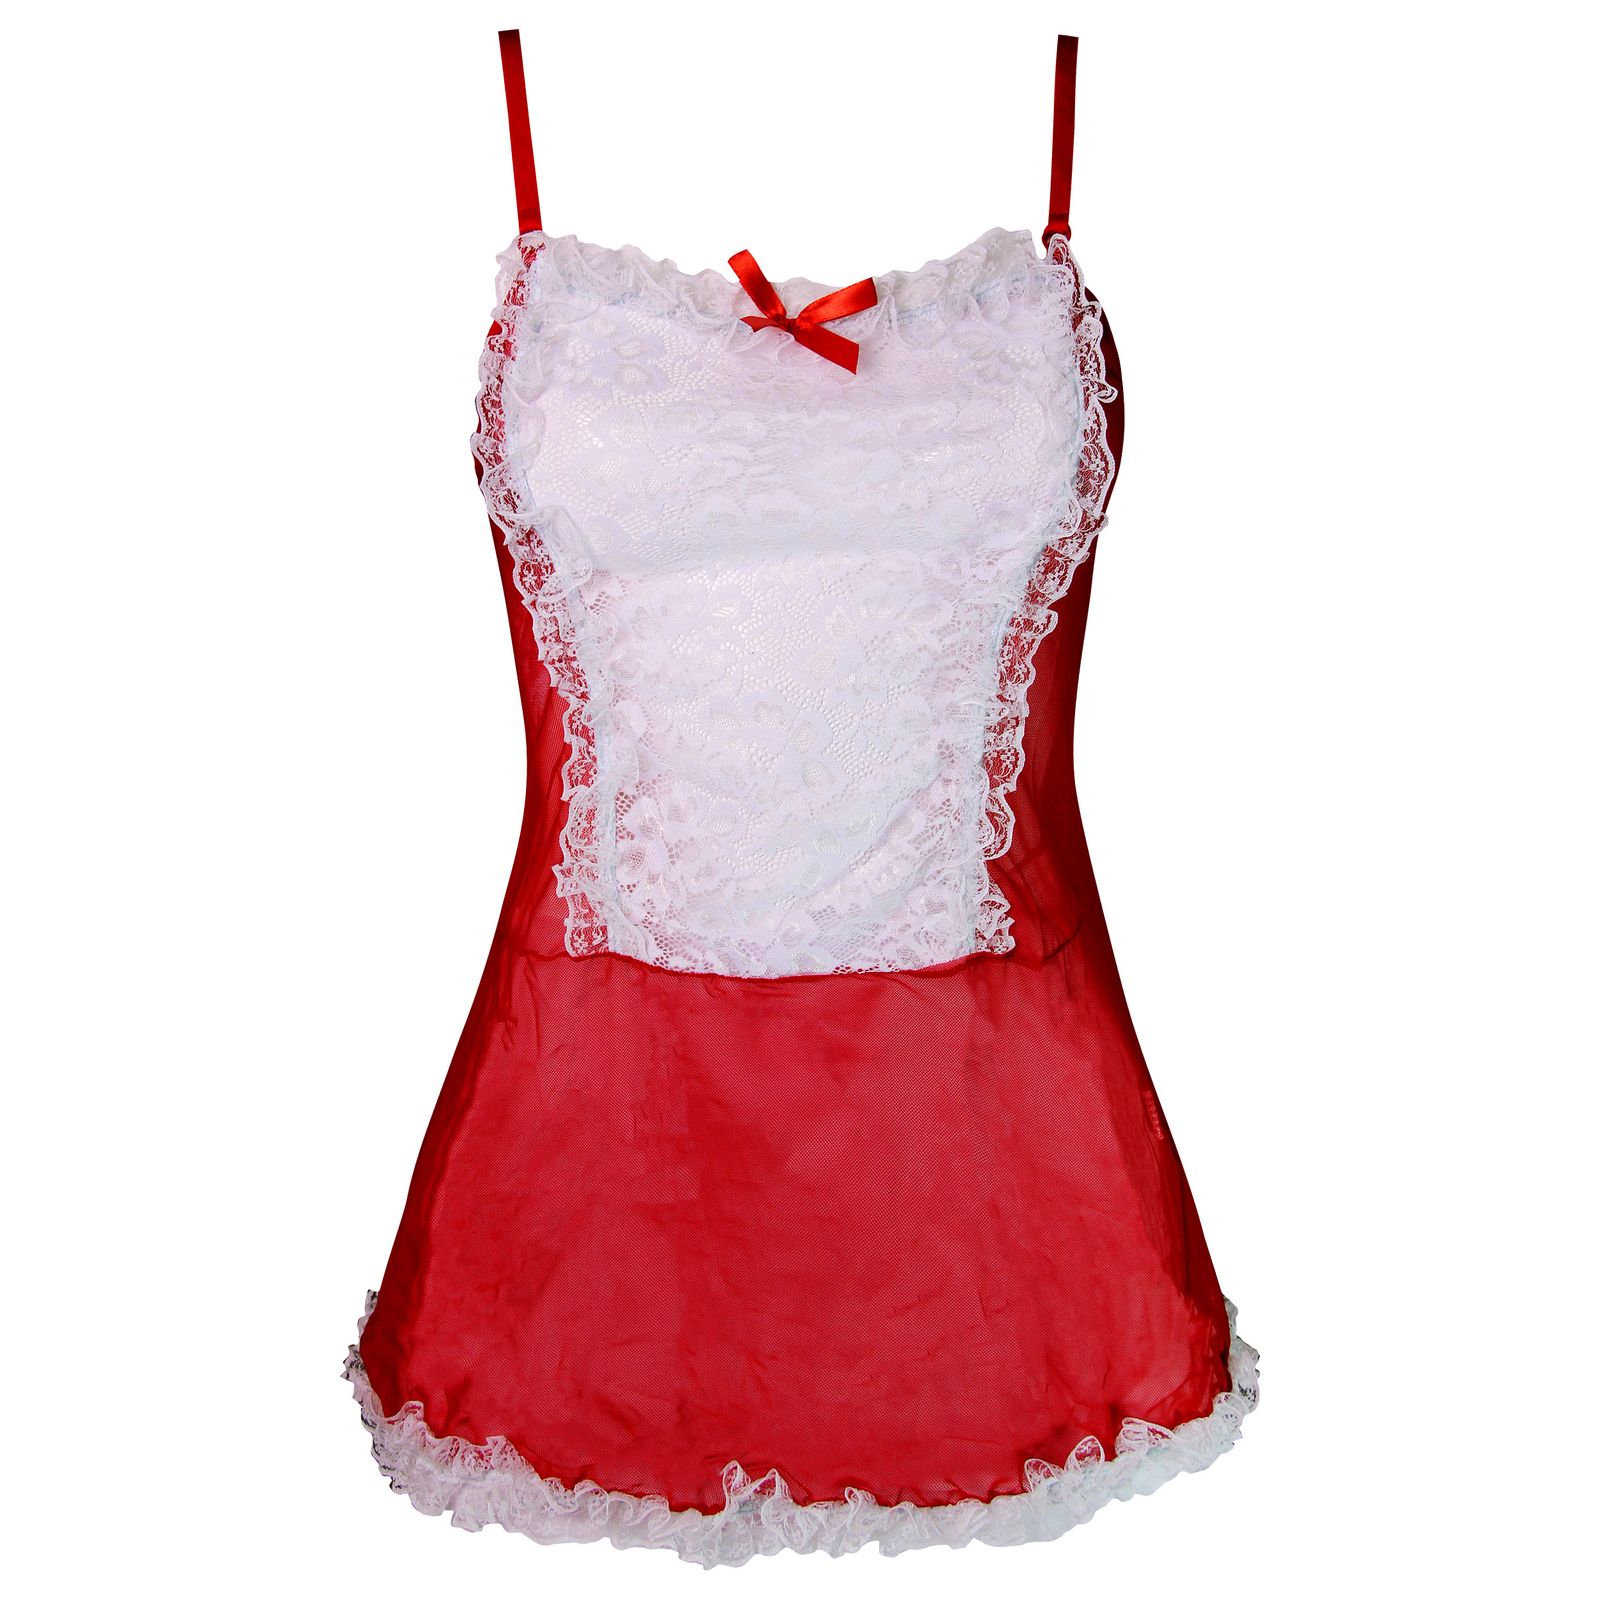 ست لباس خواب زنانه ماییلدا مدل فانتزی کد 3684-413 رنگ قرمز -  - 2